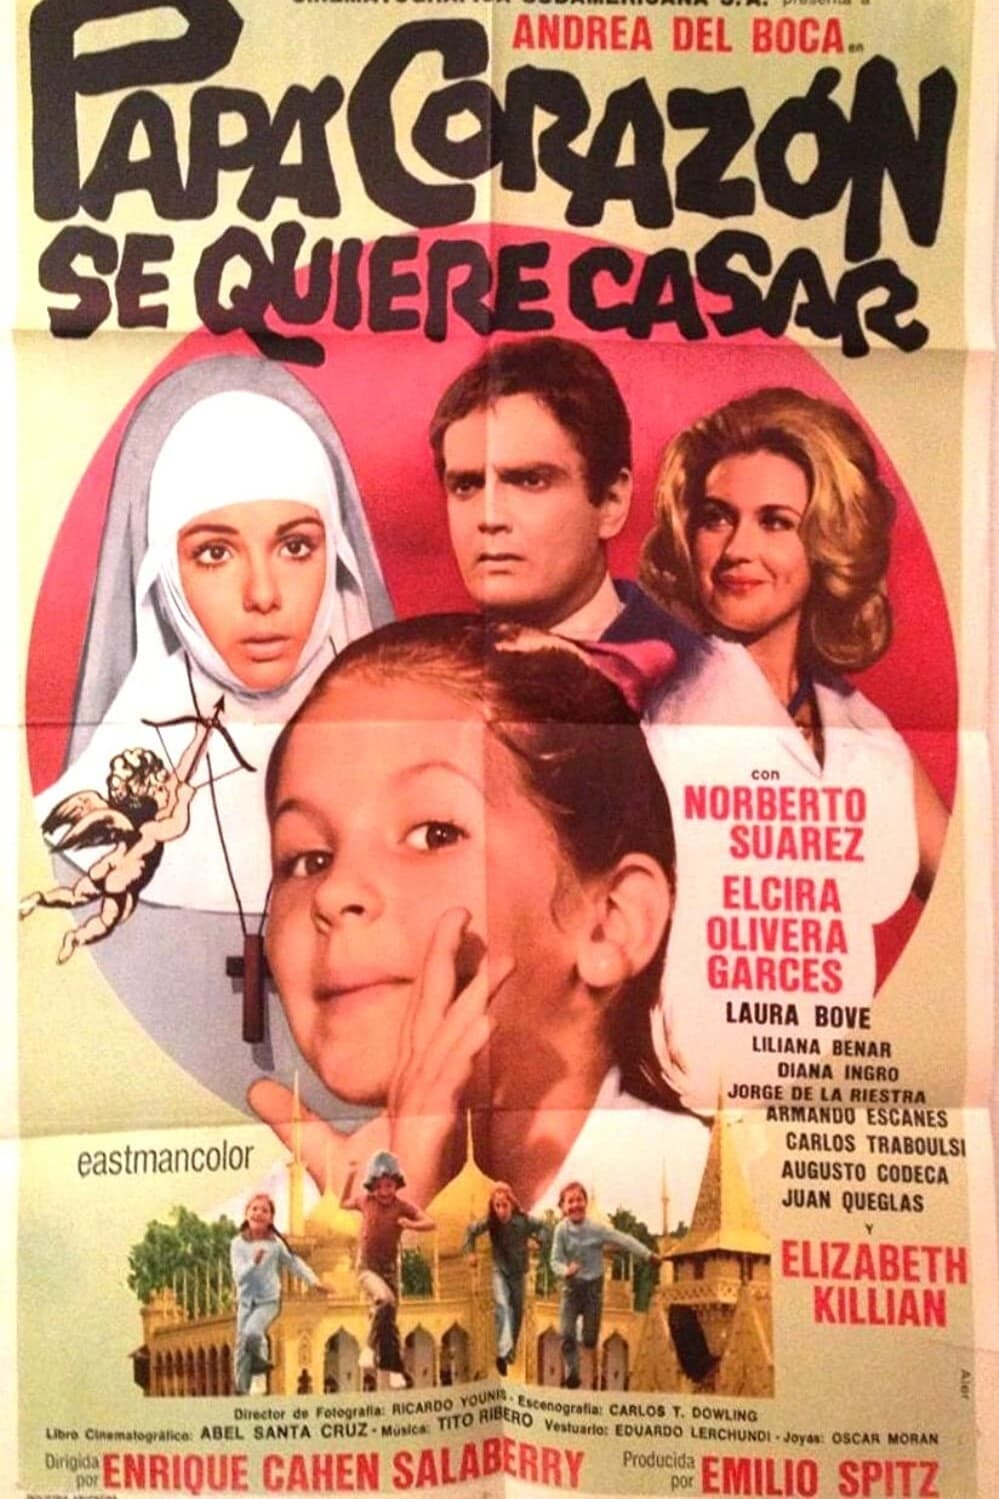 Papá Corazón se quiere casar (1974)